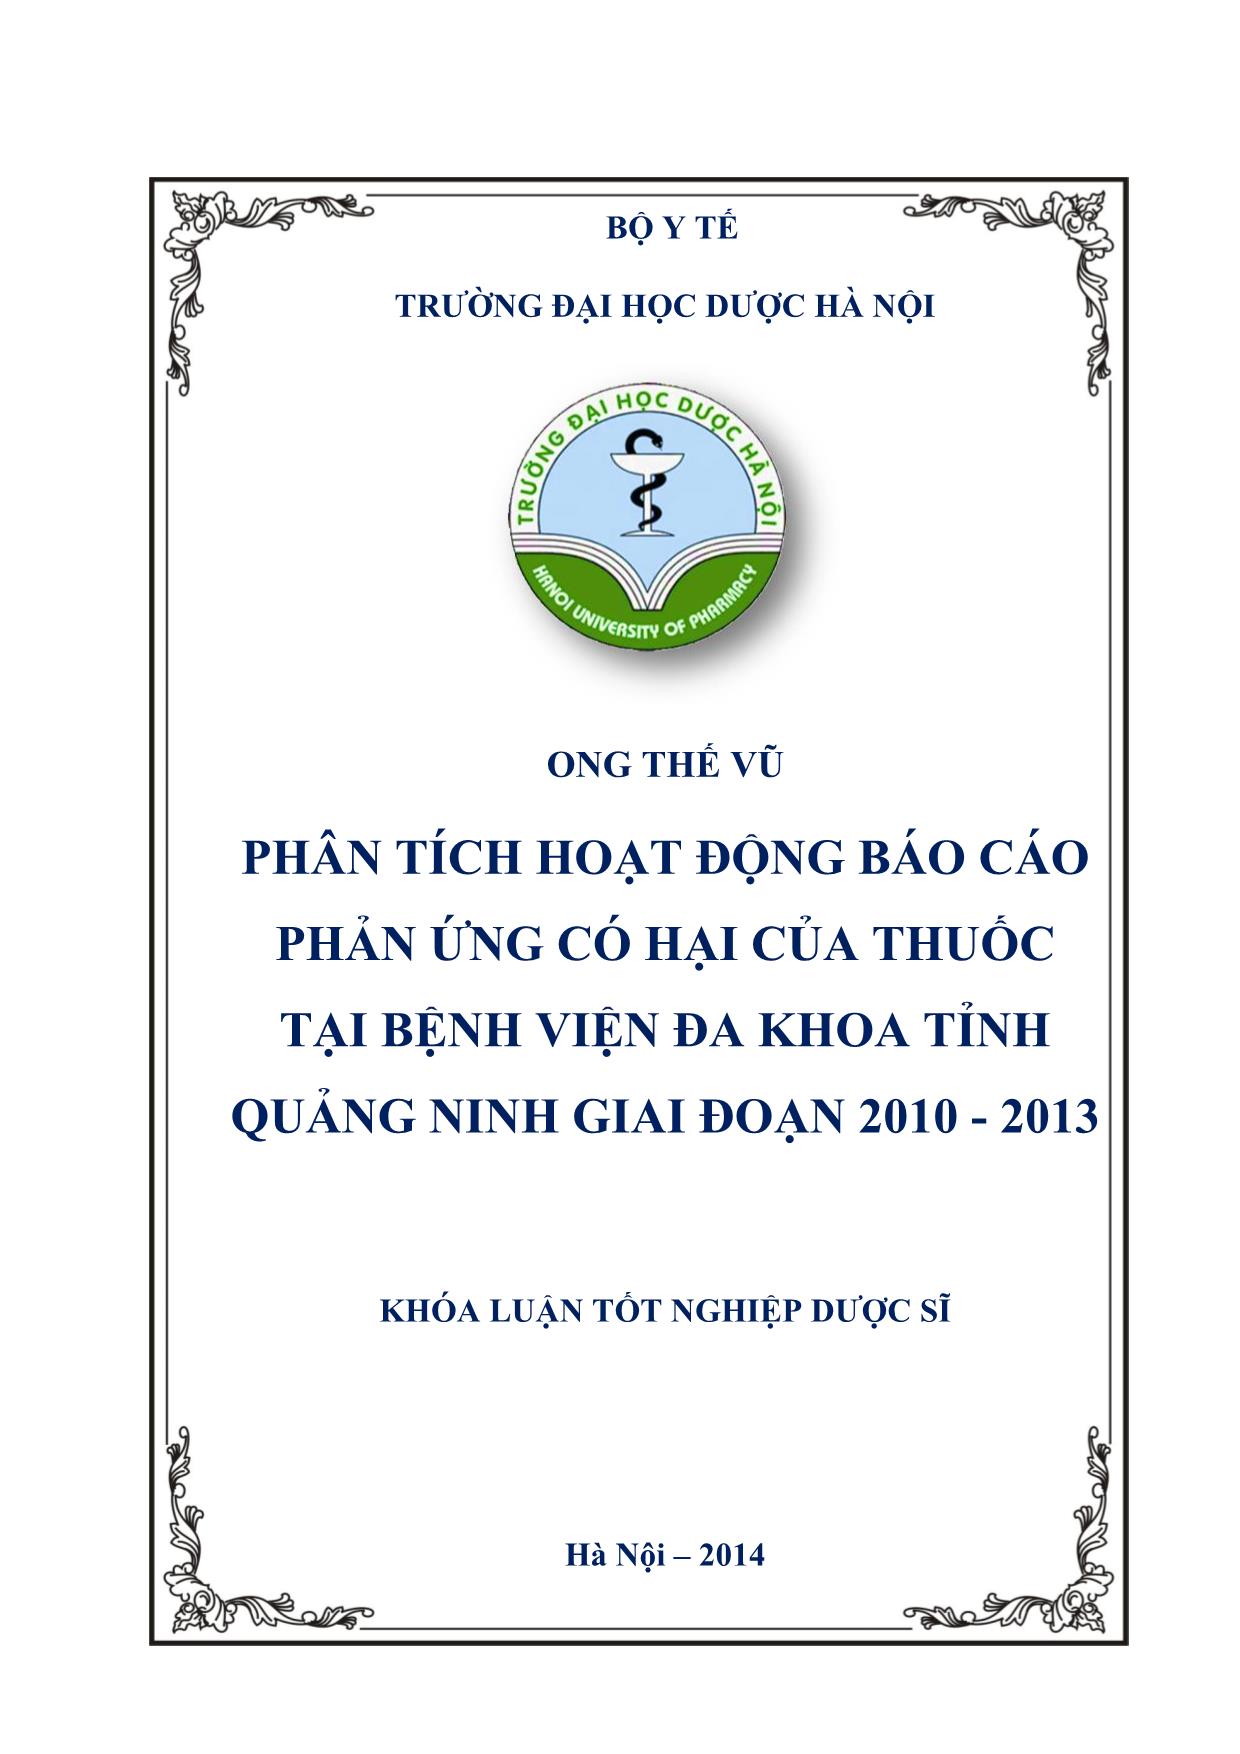 Phân tích hoạt động Báo cáo phản ứng có hại của thuốc tại bệnh viện đa khoa tỉnh Quảng Ninh giai đoạn 2010 - 2013 trang 1